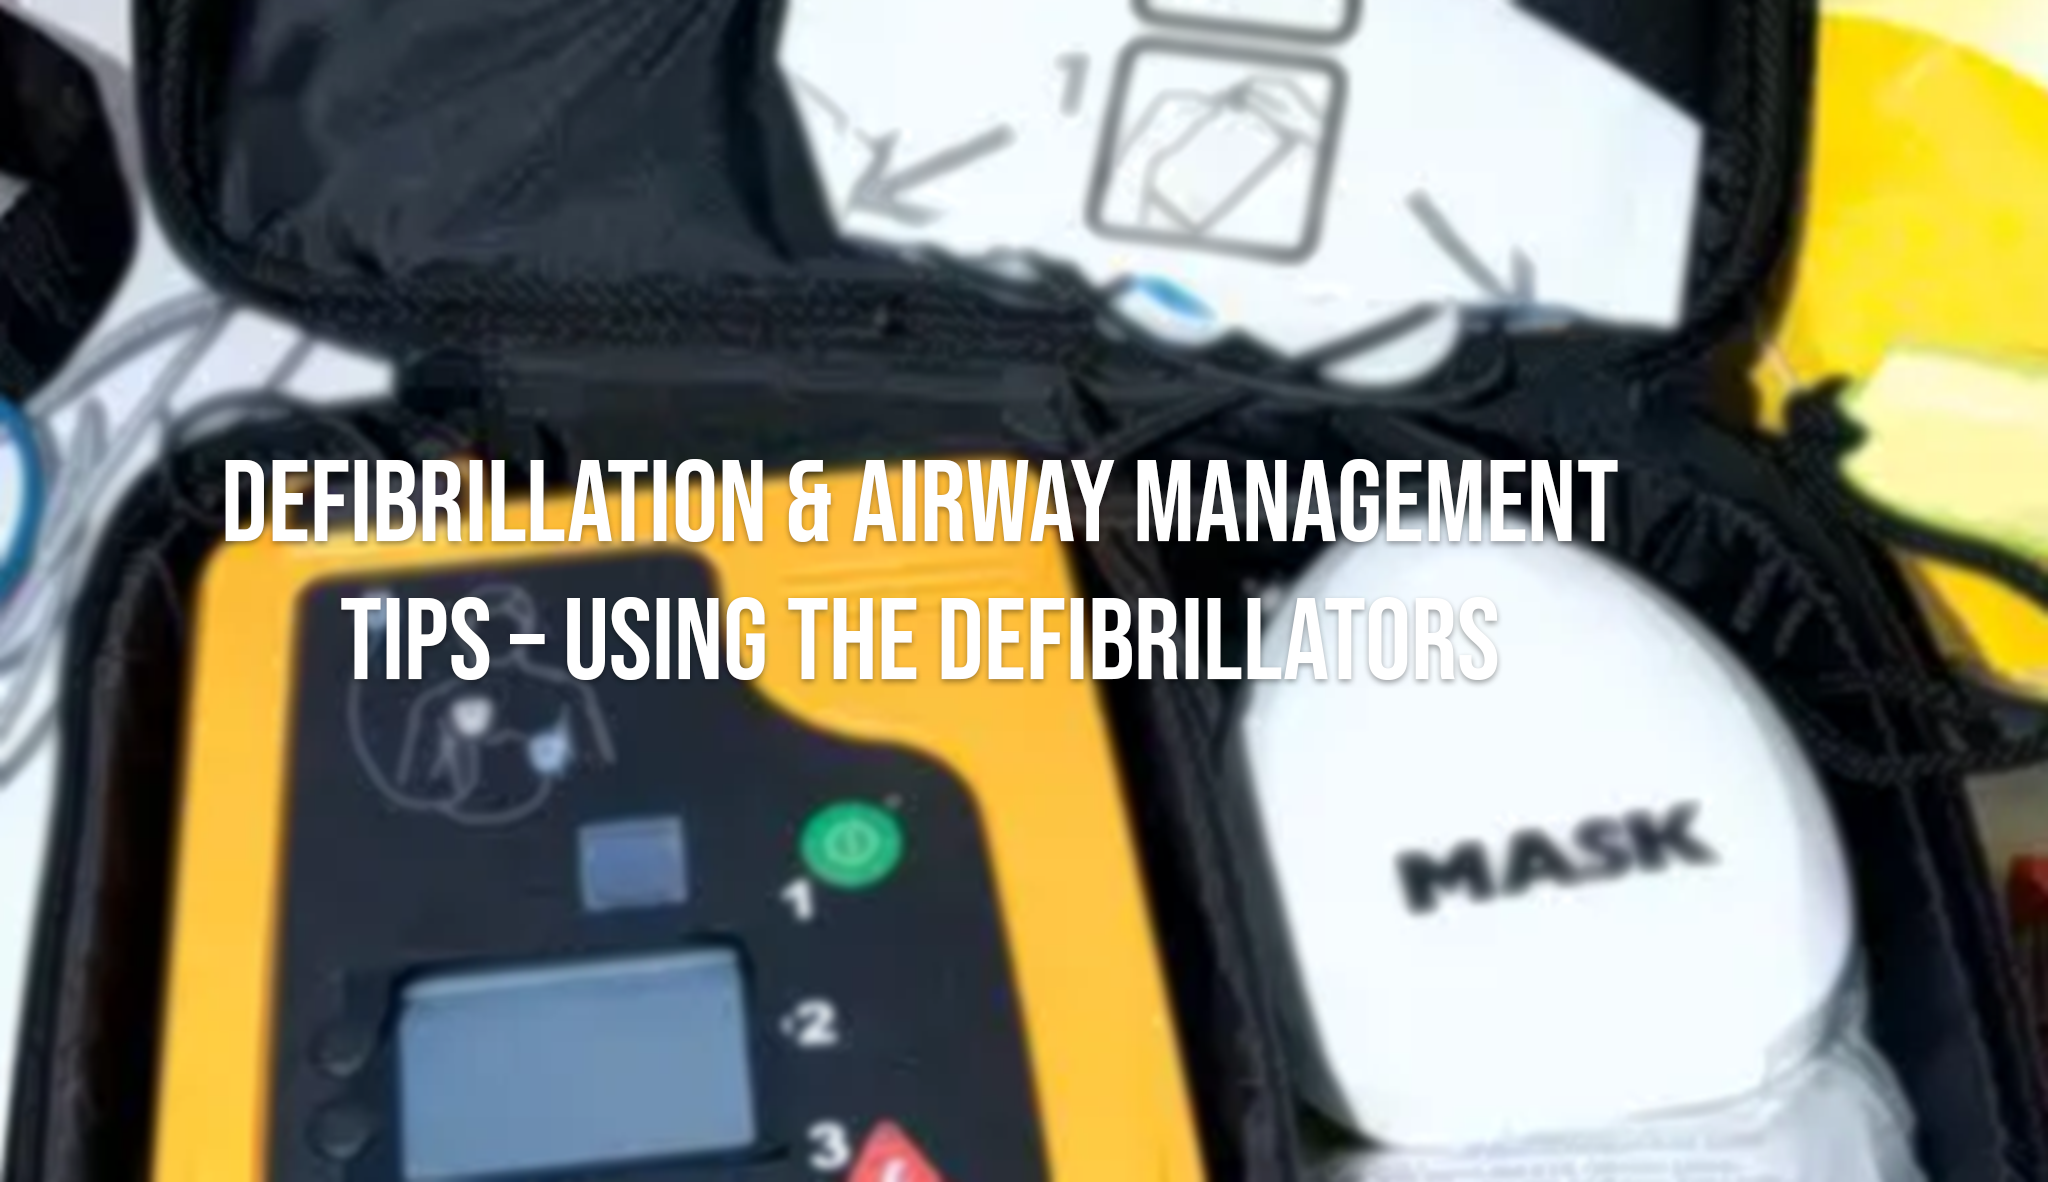 Defibrillation & Airway Management Tips - Using the Defibrillators